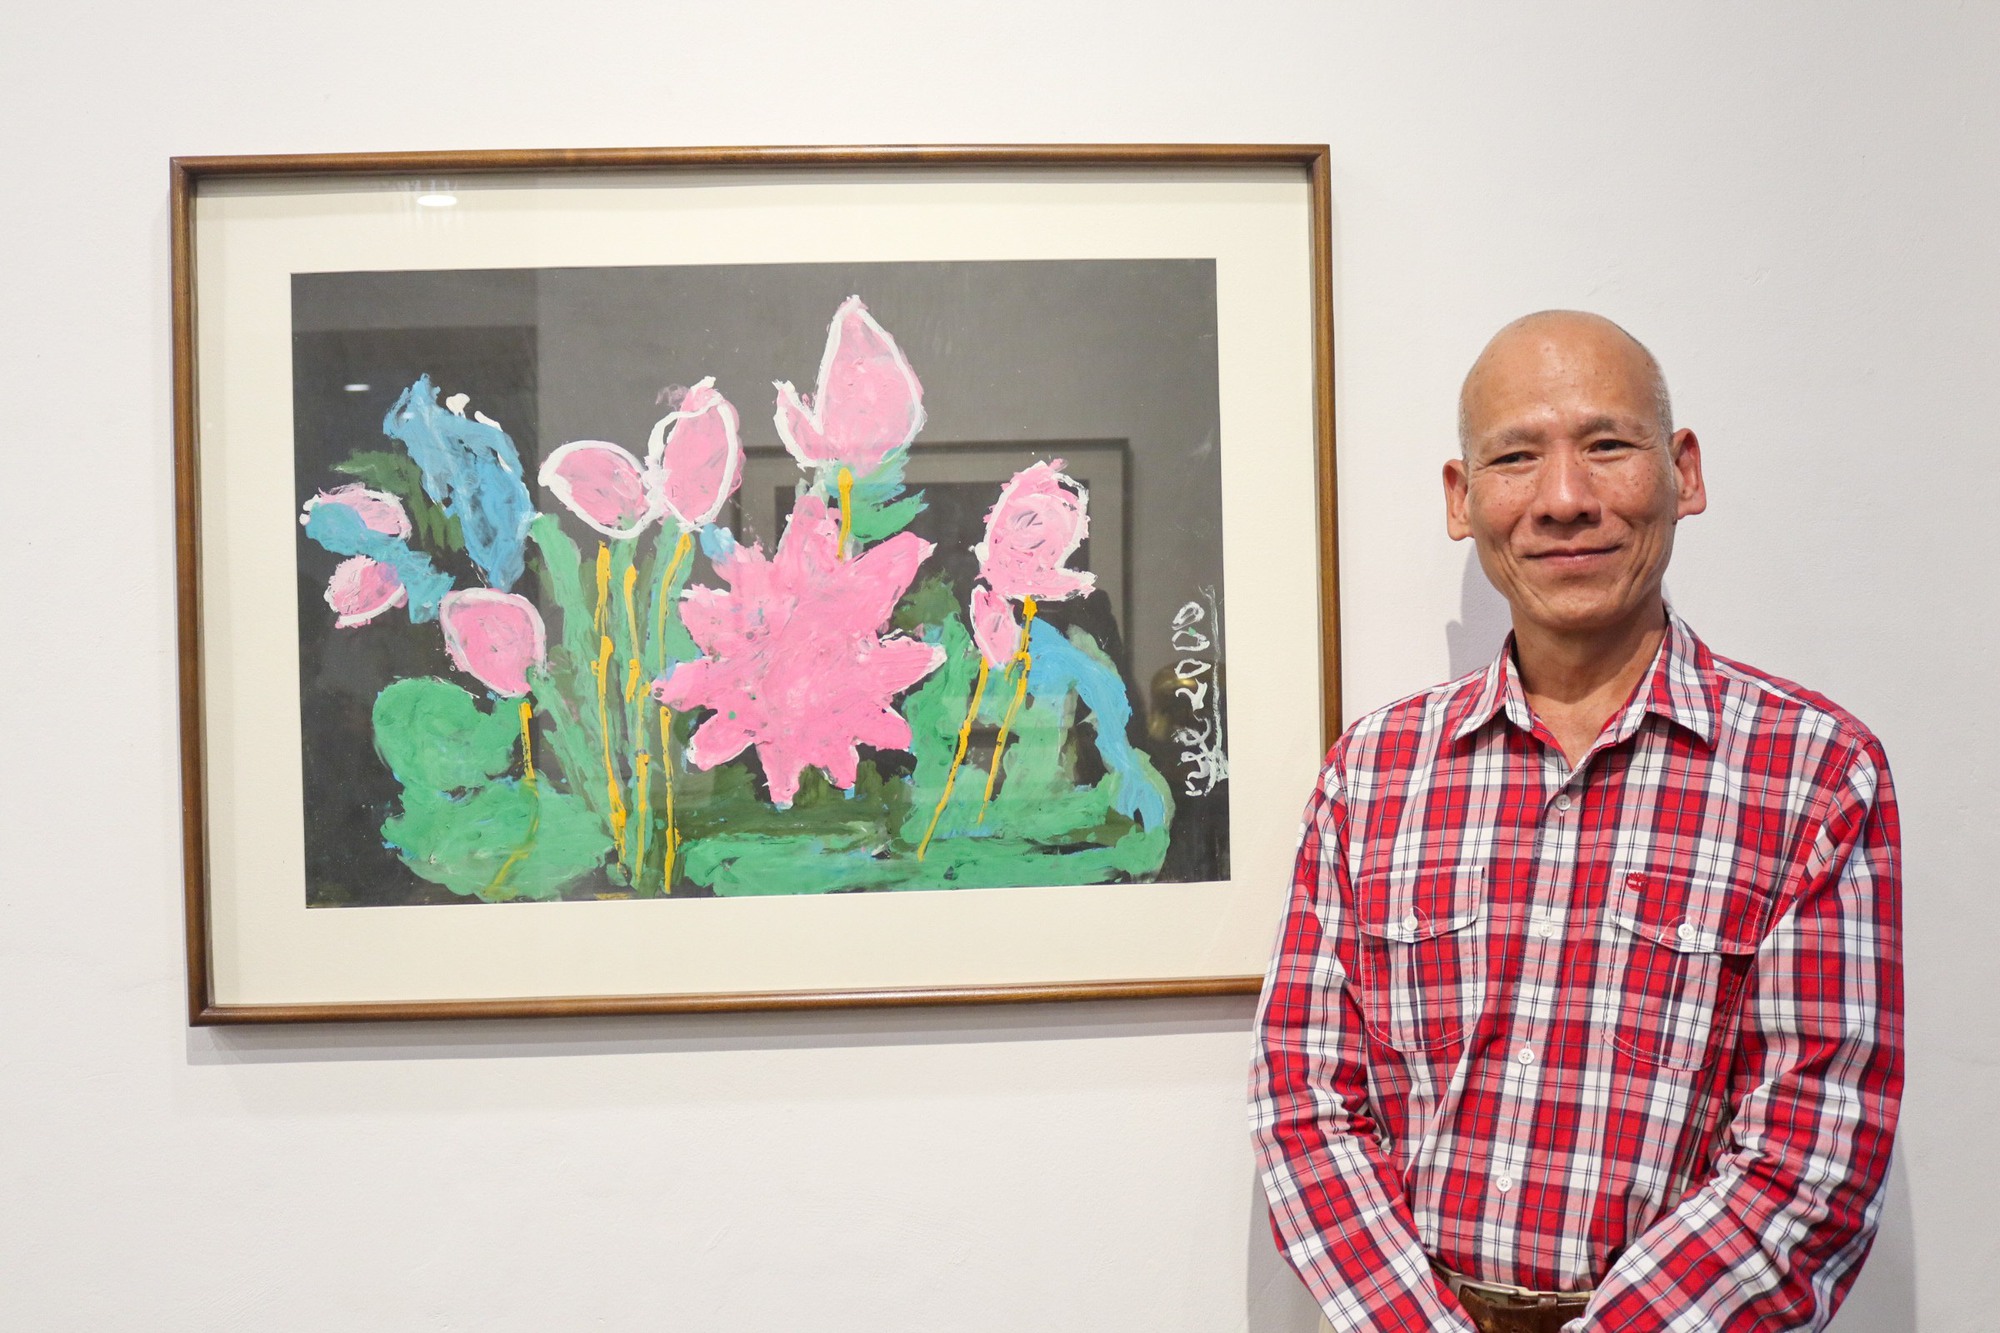 Trăm năm Nguyễn Tư Nghiêm: tôn vinh sự nghiệp hội họa của một họa sĩ tài năng - Ảnh 2.